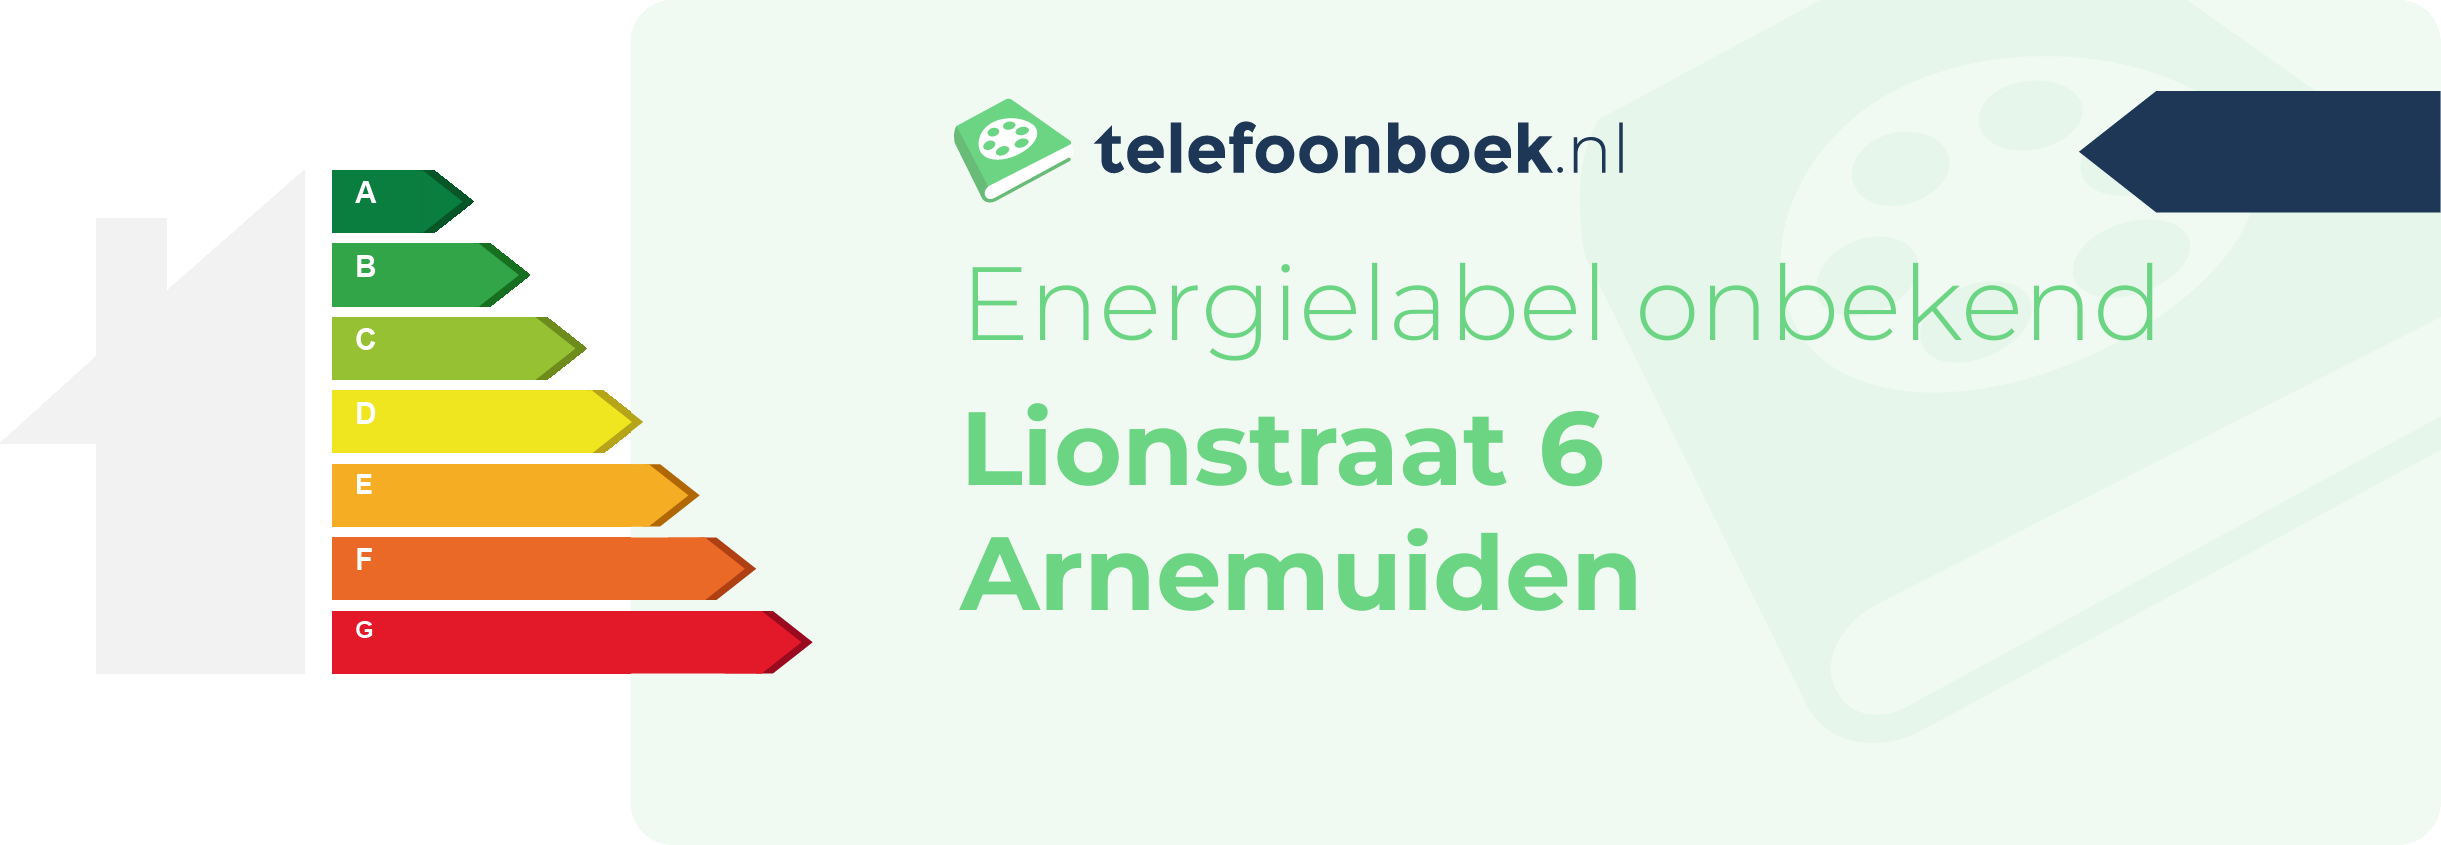 Energielabel Lionstraat 6 Arnemuiden